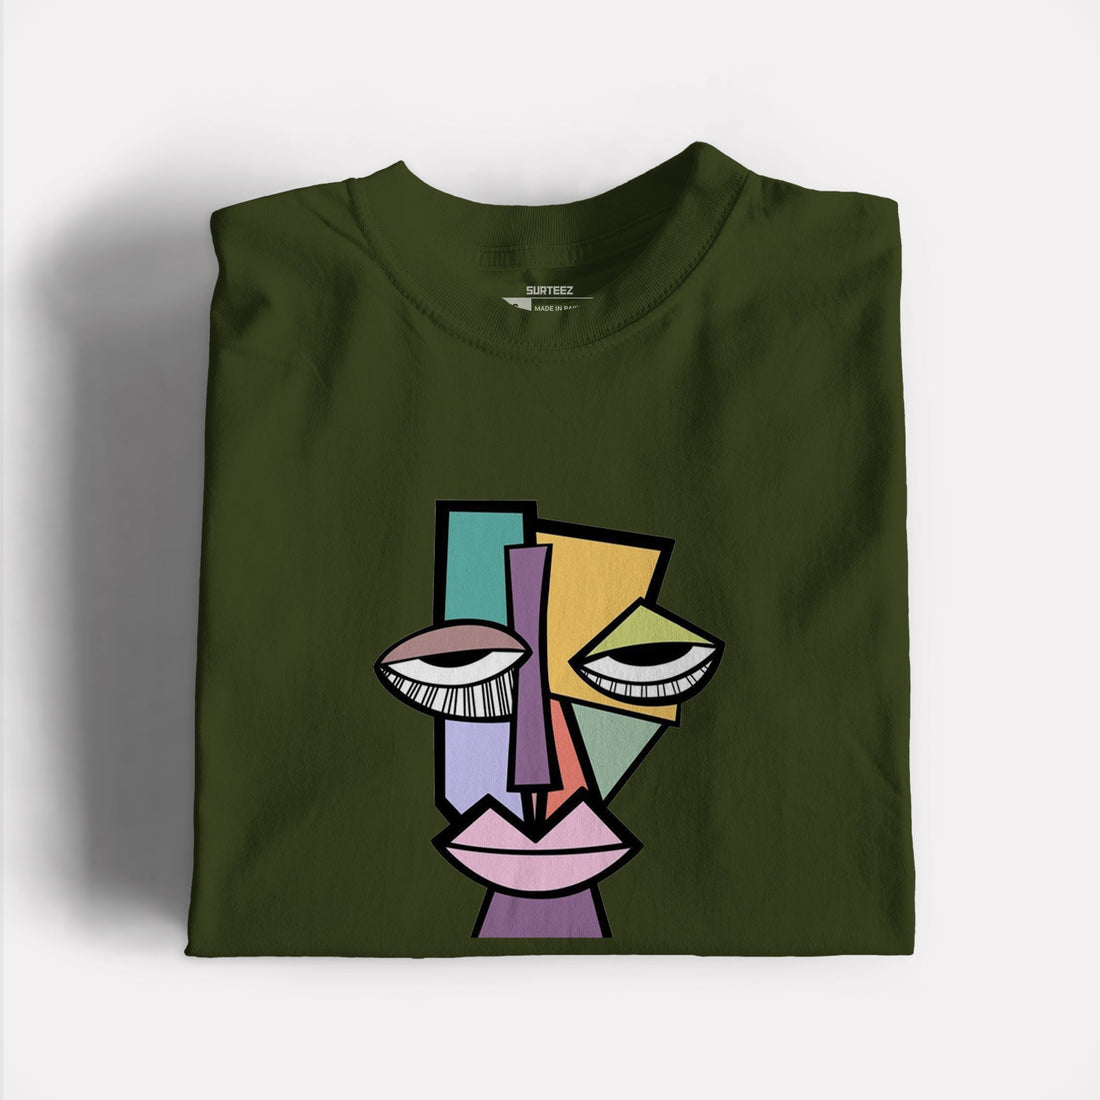 Drunk Graphic Tshirt